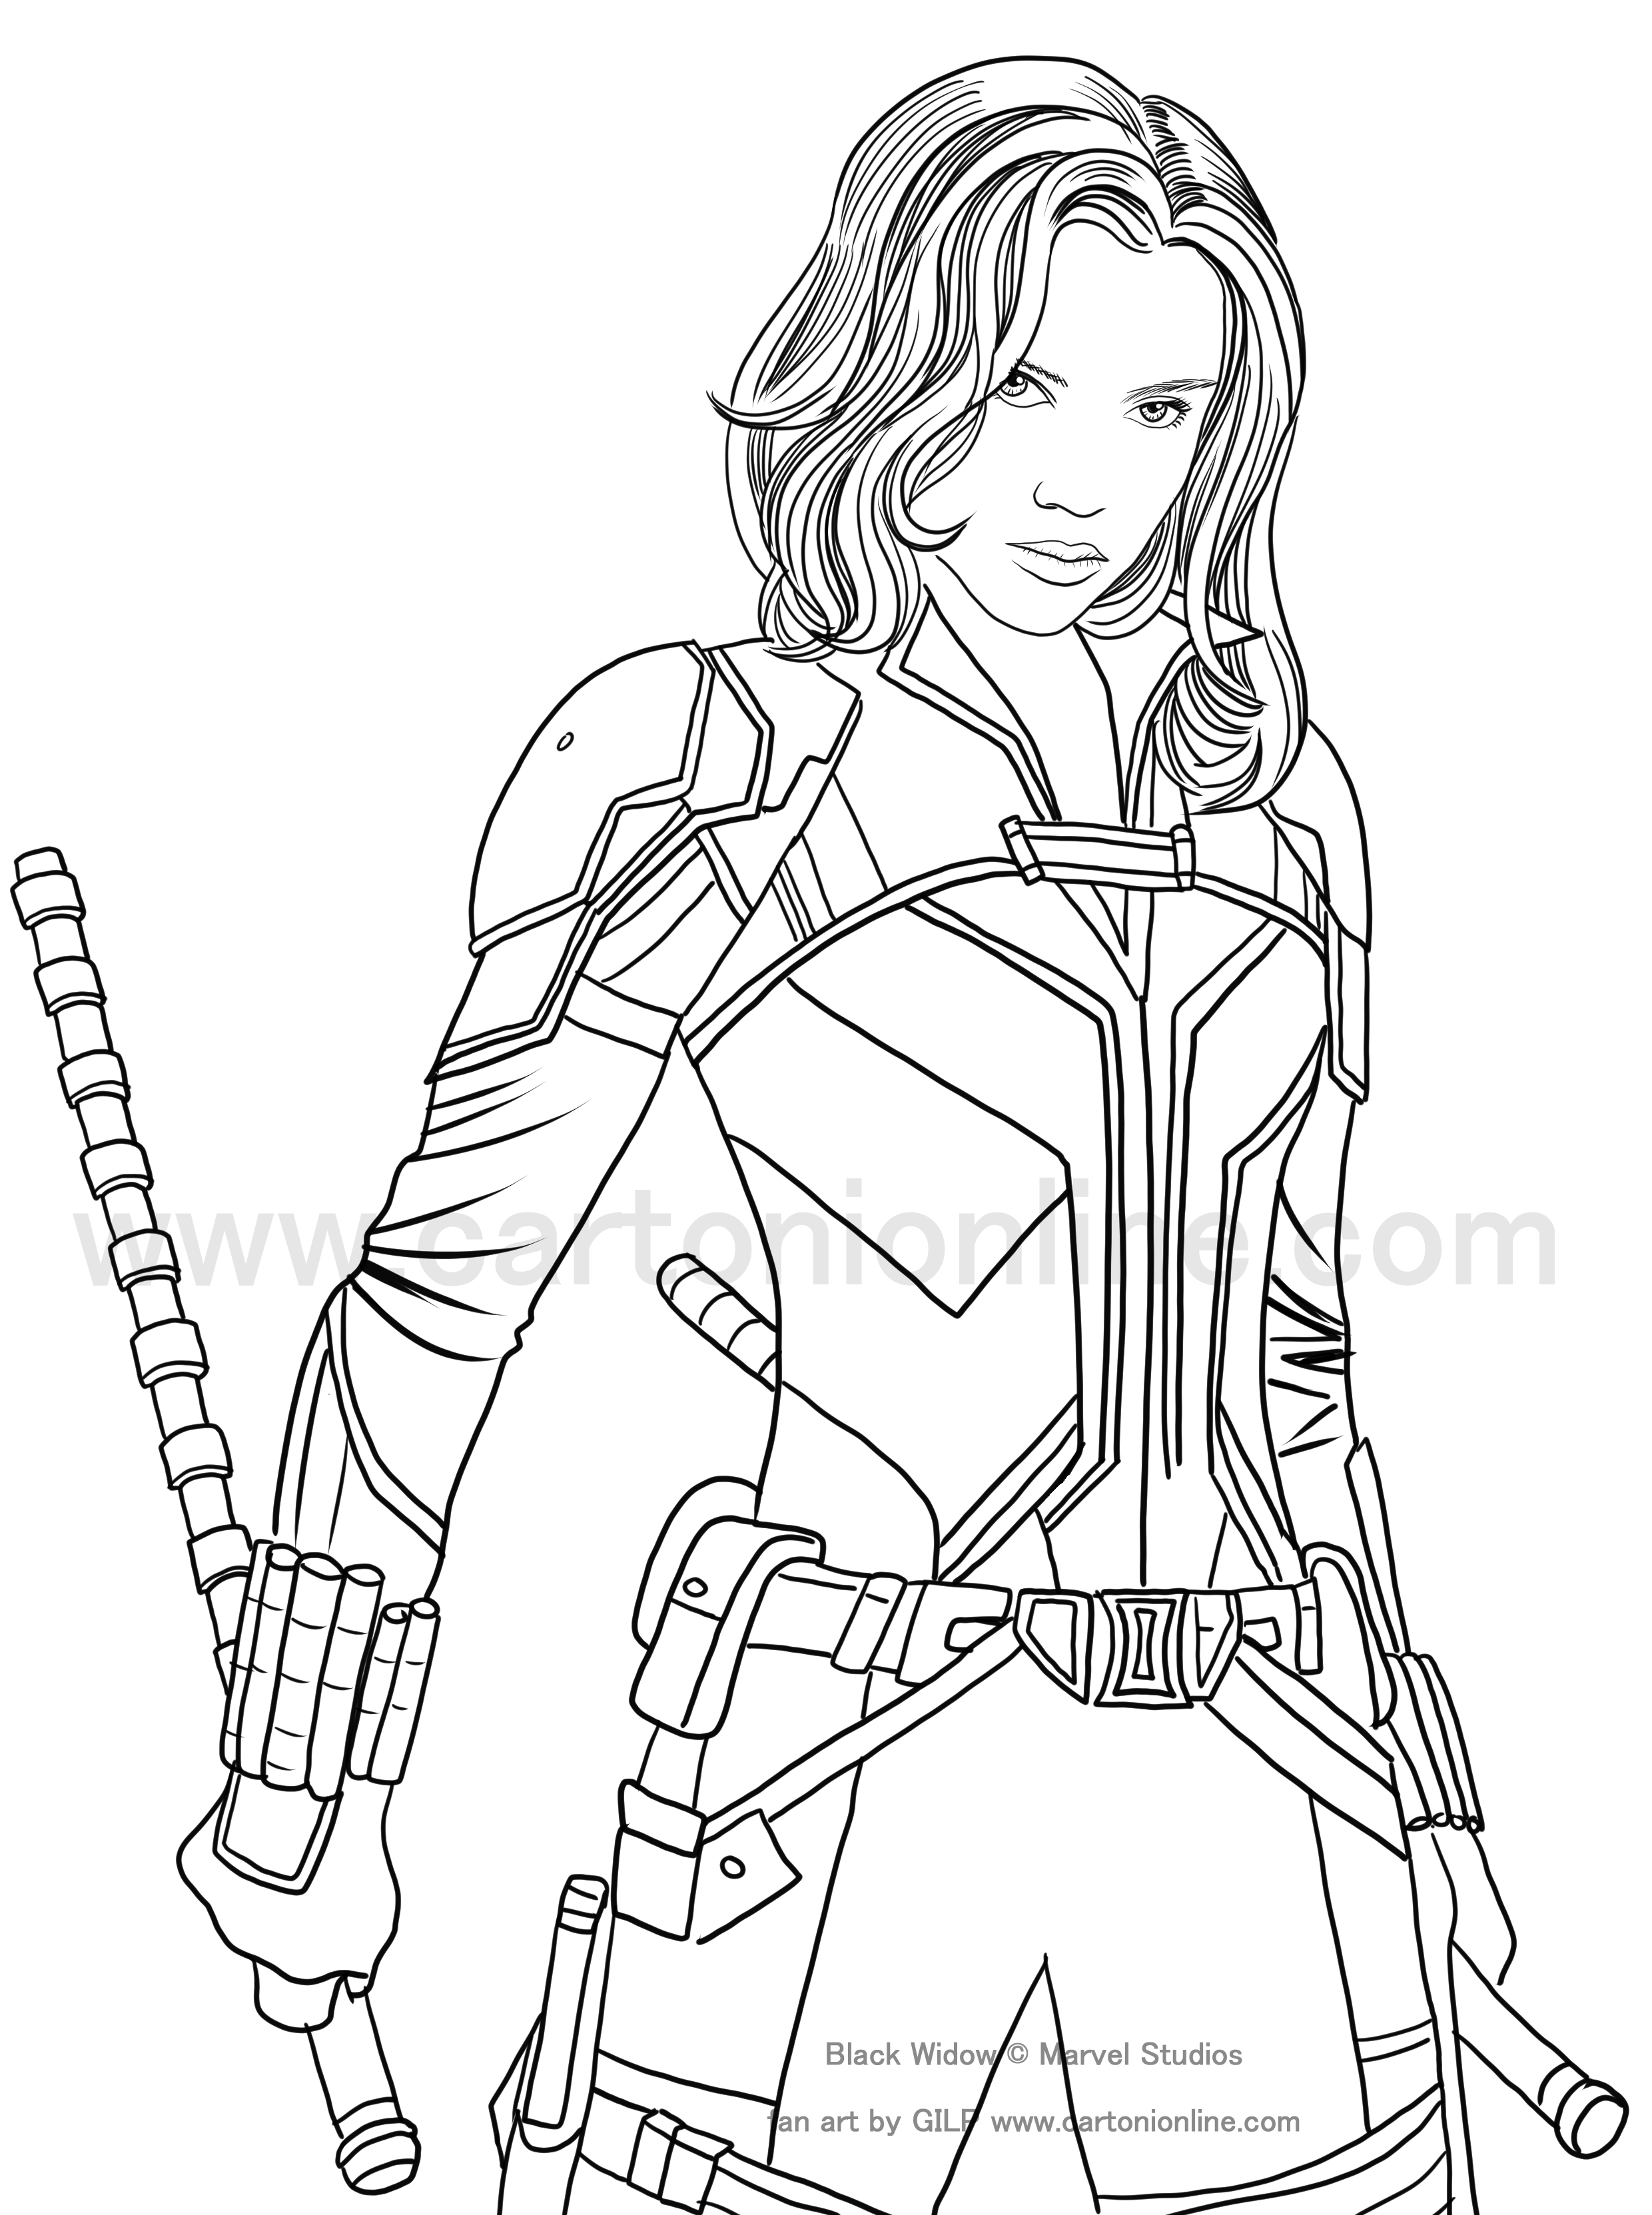 Dibujo de Black Widow (Scarlett Johansson) 02 de Black Widow (movie) para imprimir y colorear